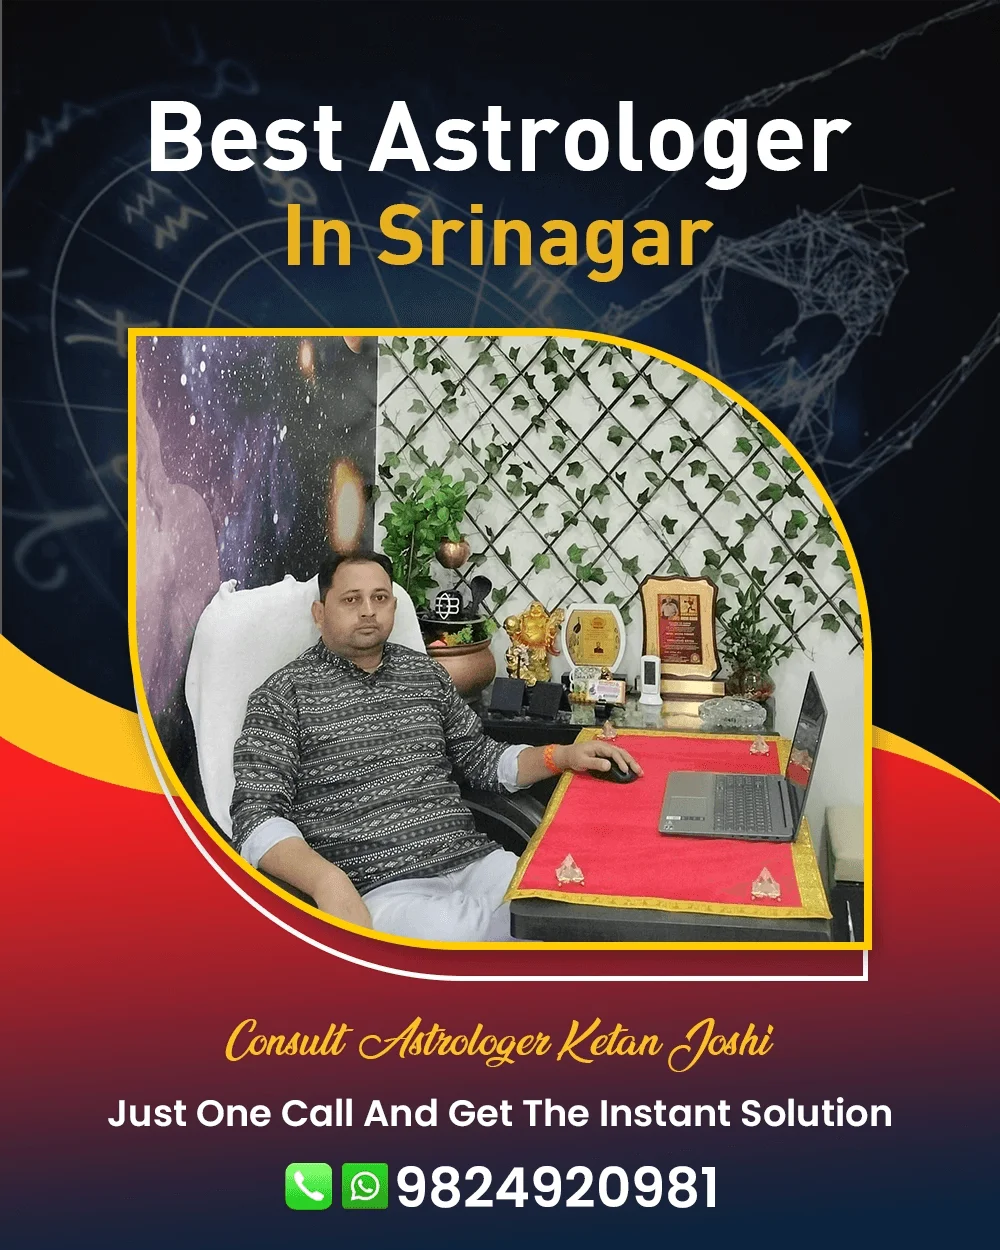 Best Astrologer In Srinagar